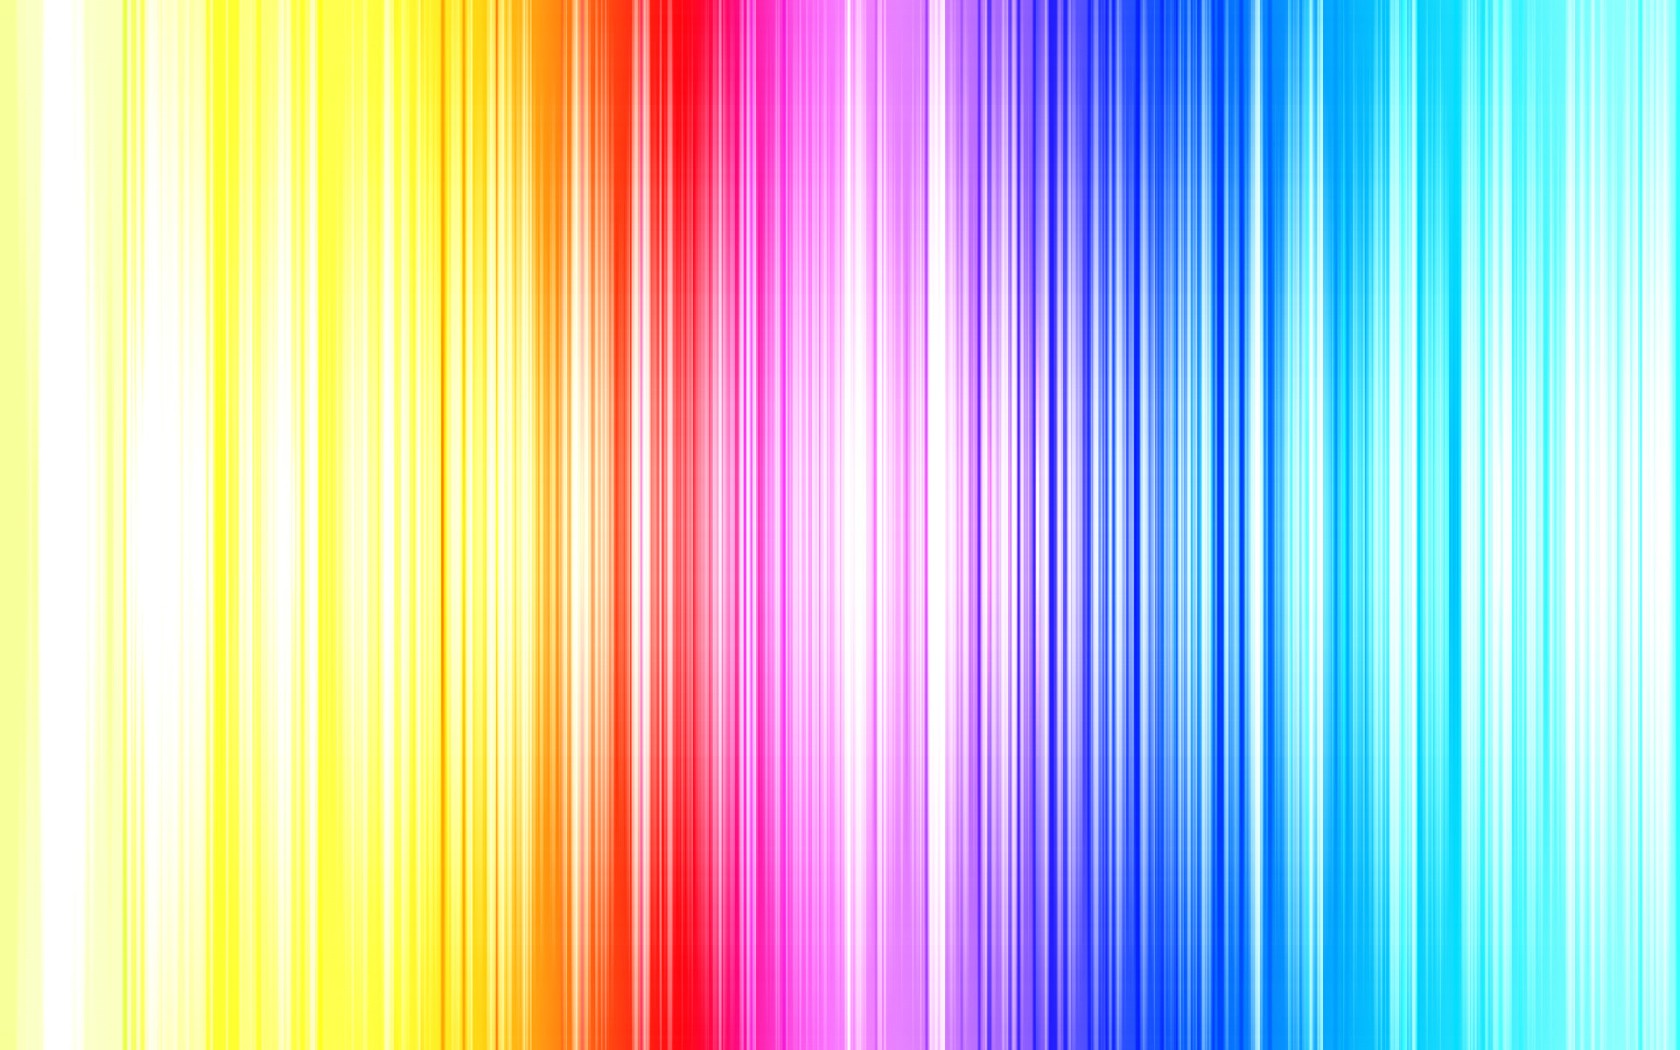 壁纸1680x1050抽象背景 彩虹之色 彩虹之色 抽象背景壁纸 抽象背景 彩虹之色壁纸 抽象背景 彩虹之色图片 抽象背景 彩虹之色素材 插画壁纸 插画图库 插画图片素材桌面壁纸